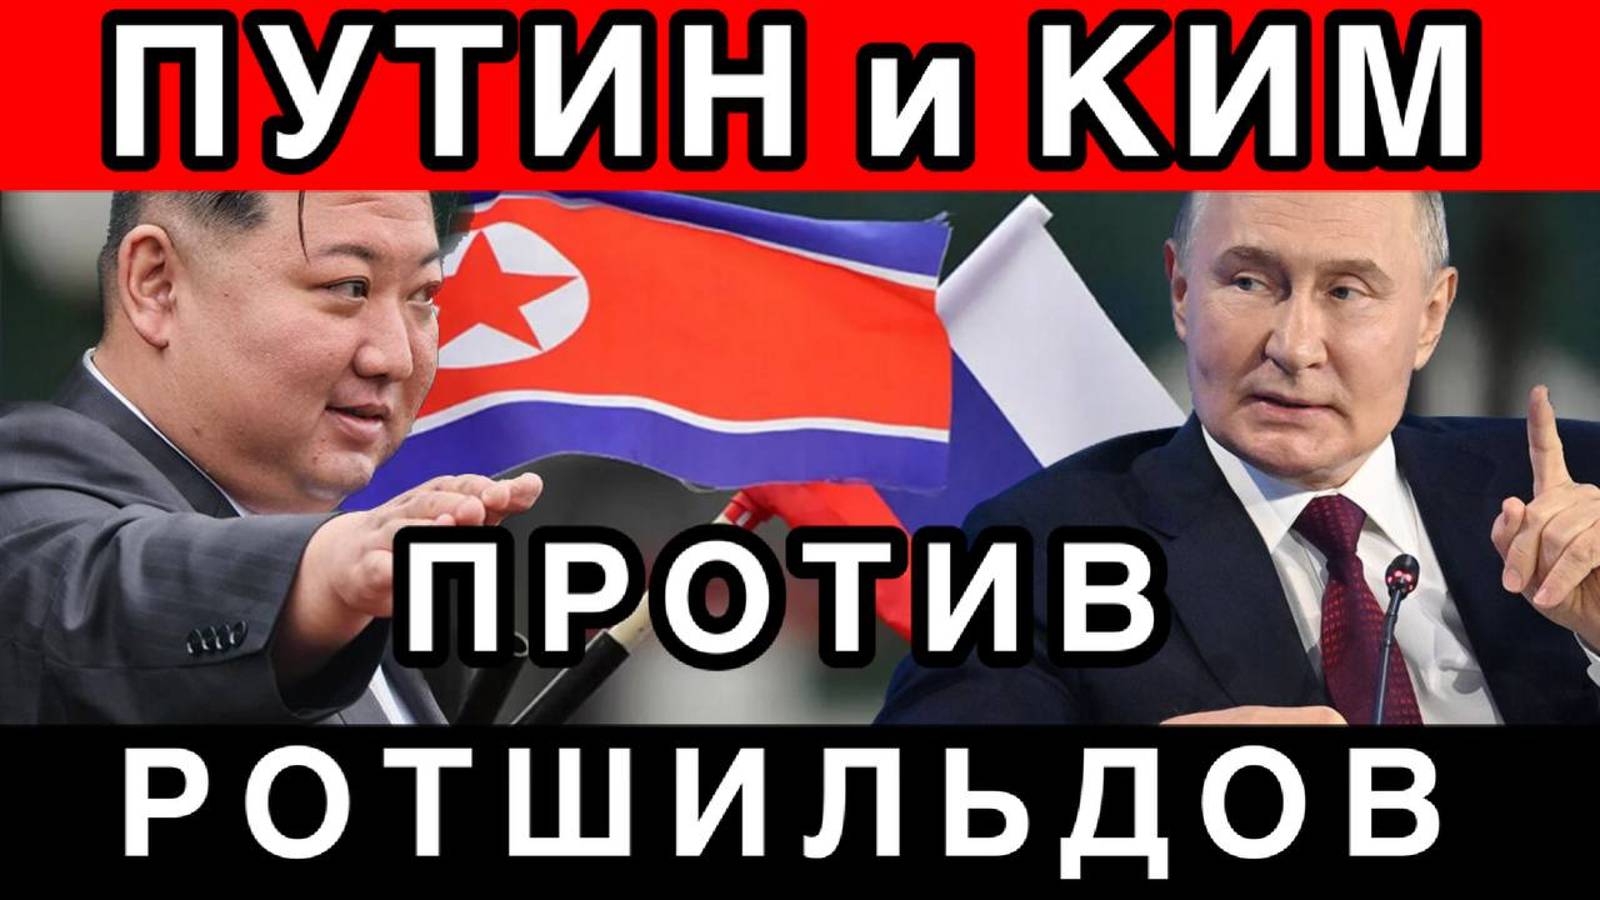 Срочно! Путин объявил войну Ротшильдам! Россия и КНДР против сатанистов Ротшильда